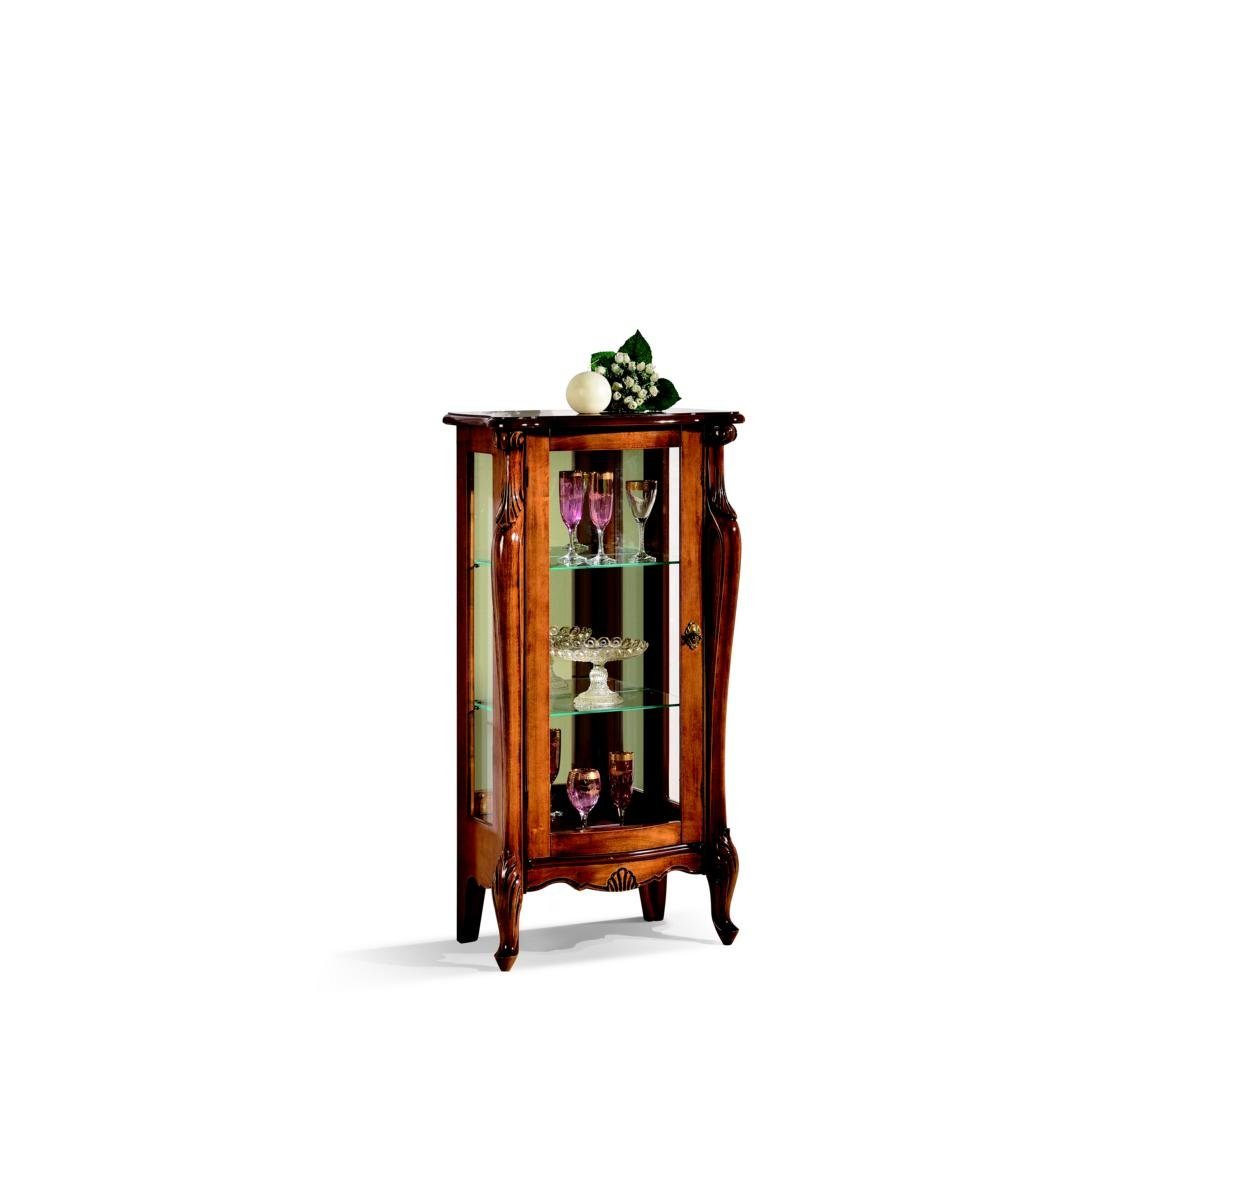 JVmoebel Vitrine Design Möbel Stil Antik Vitrine Baroco Luxus Holz Möbel Italienische Schrank